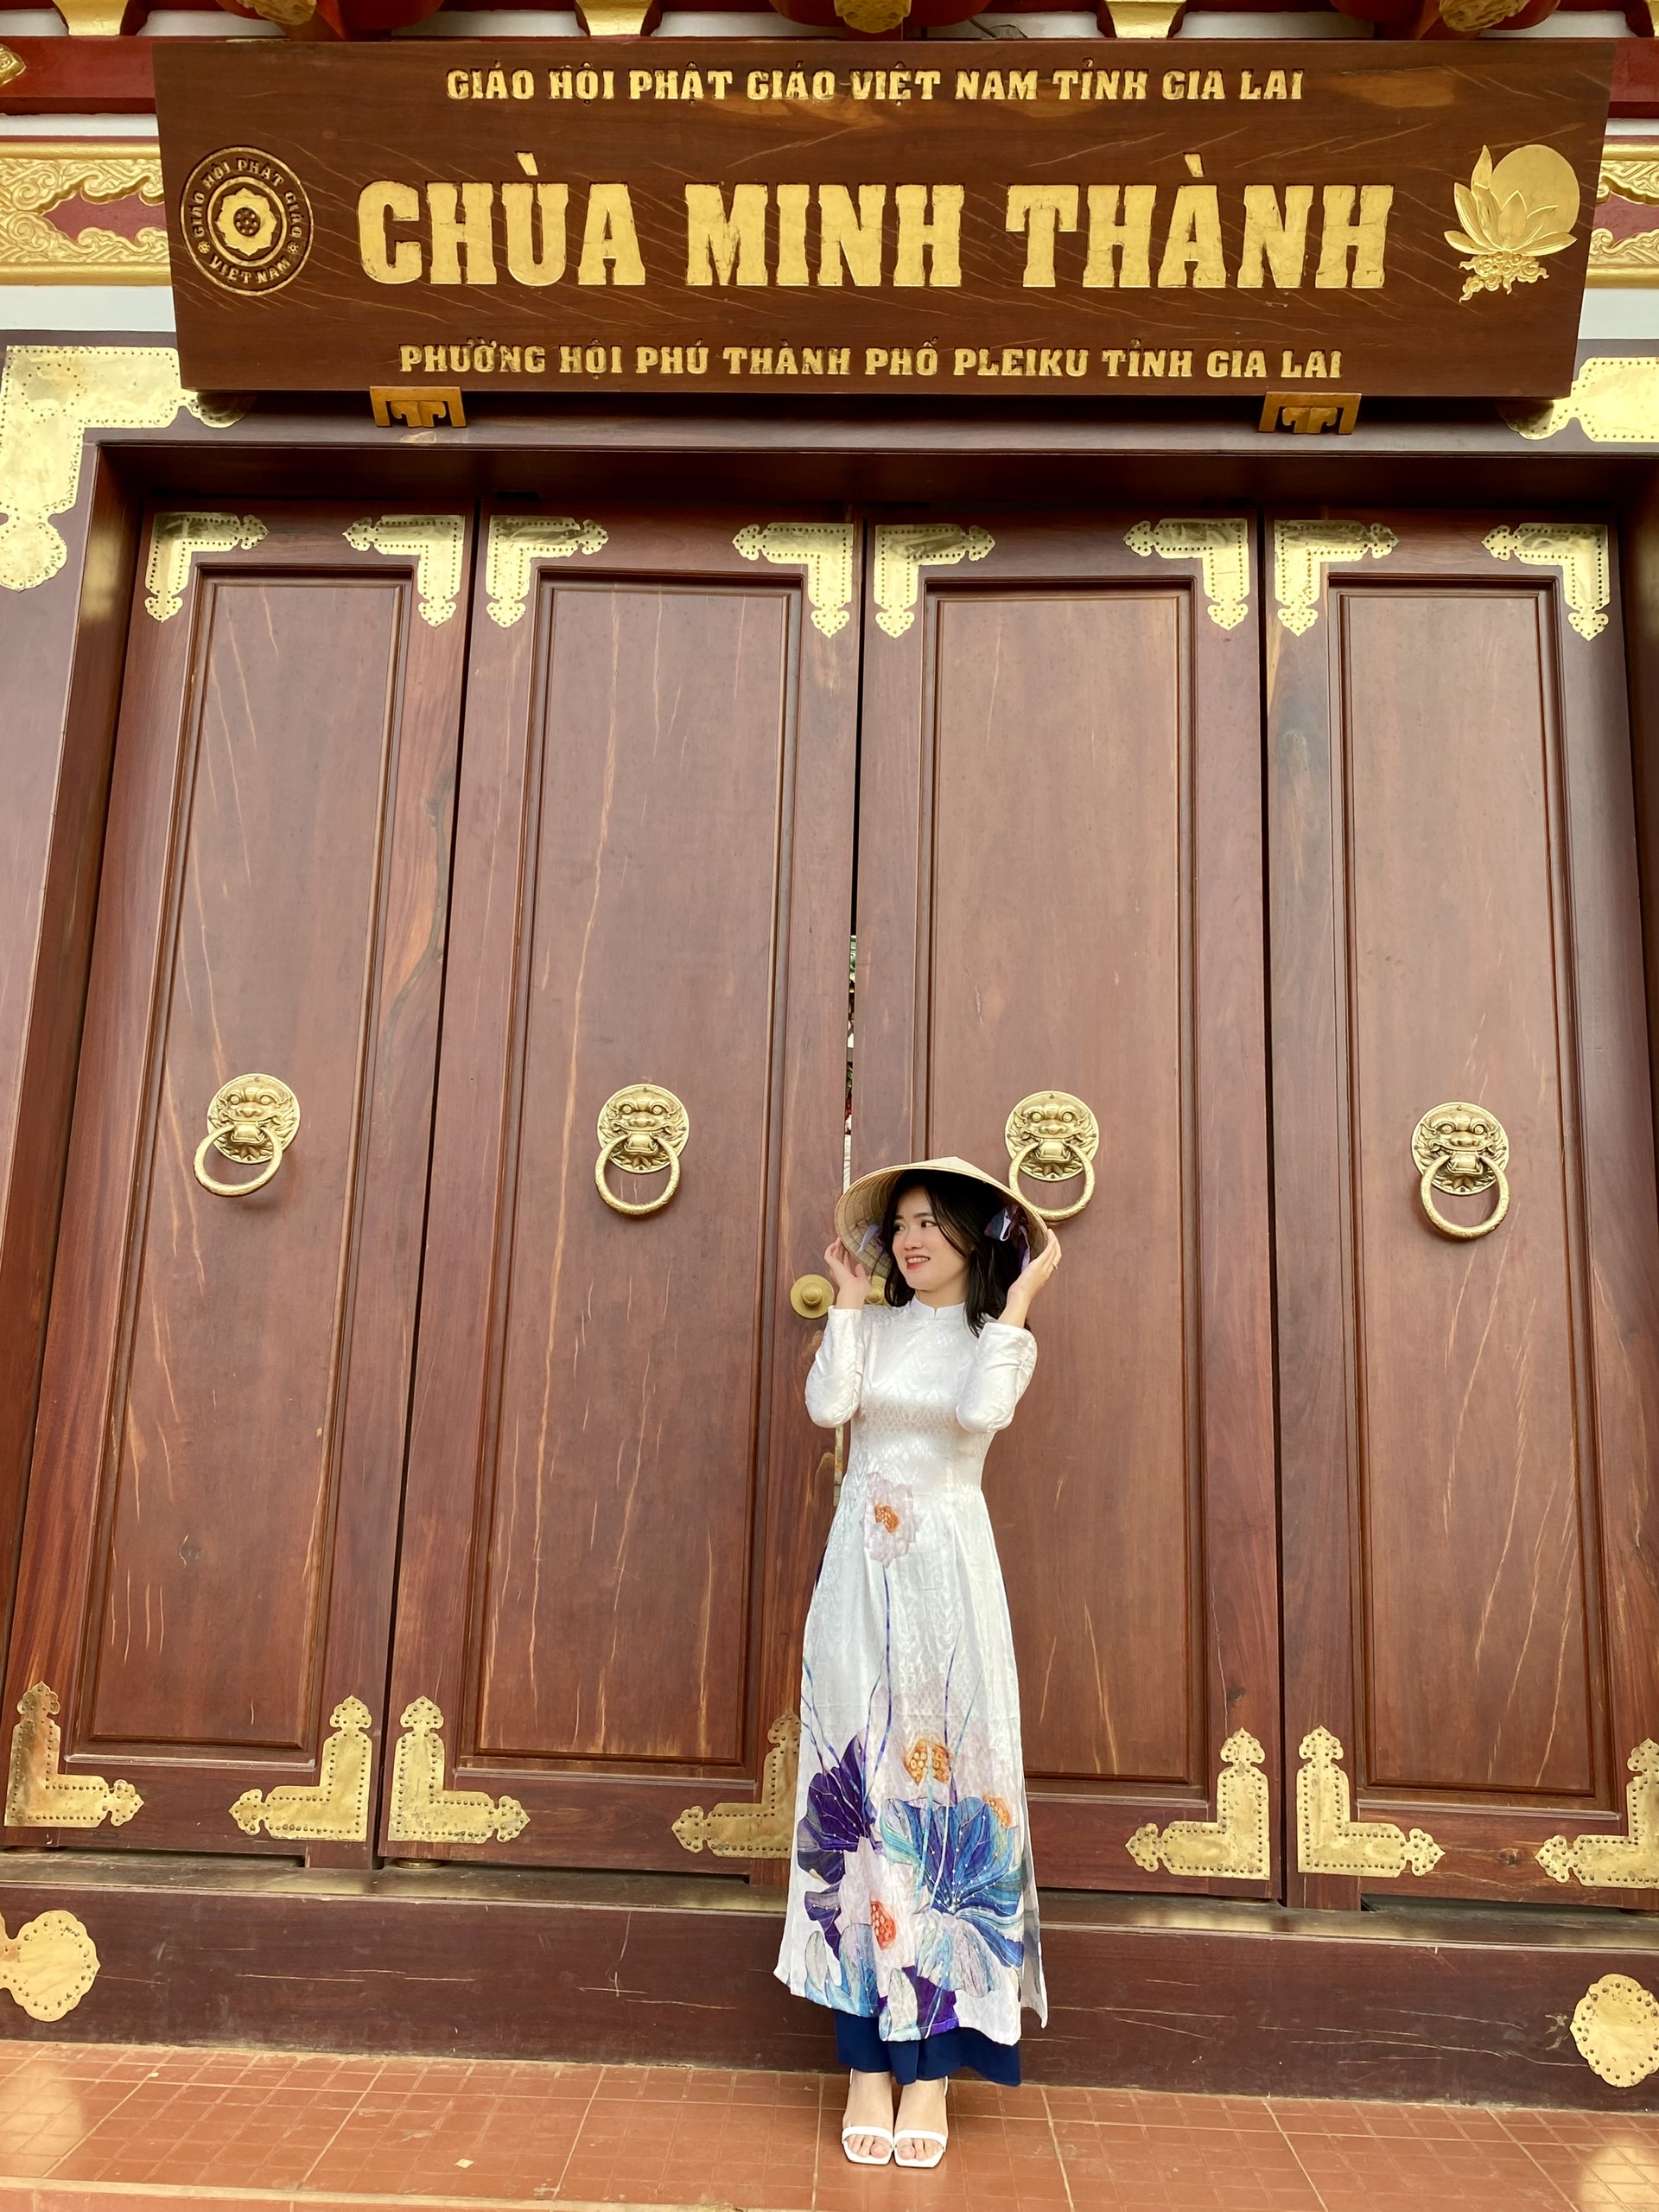 Du khách chụp ảnh lưu niệm tại chùa Minh Thành (TP. Pleiku). Ảnh: Mộc Trà